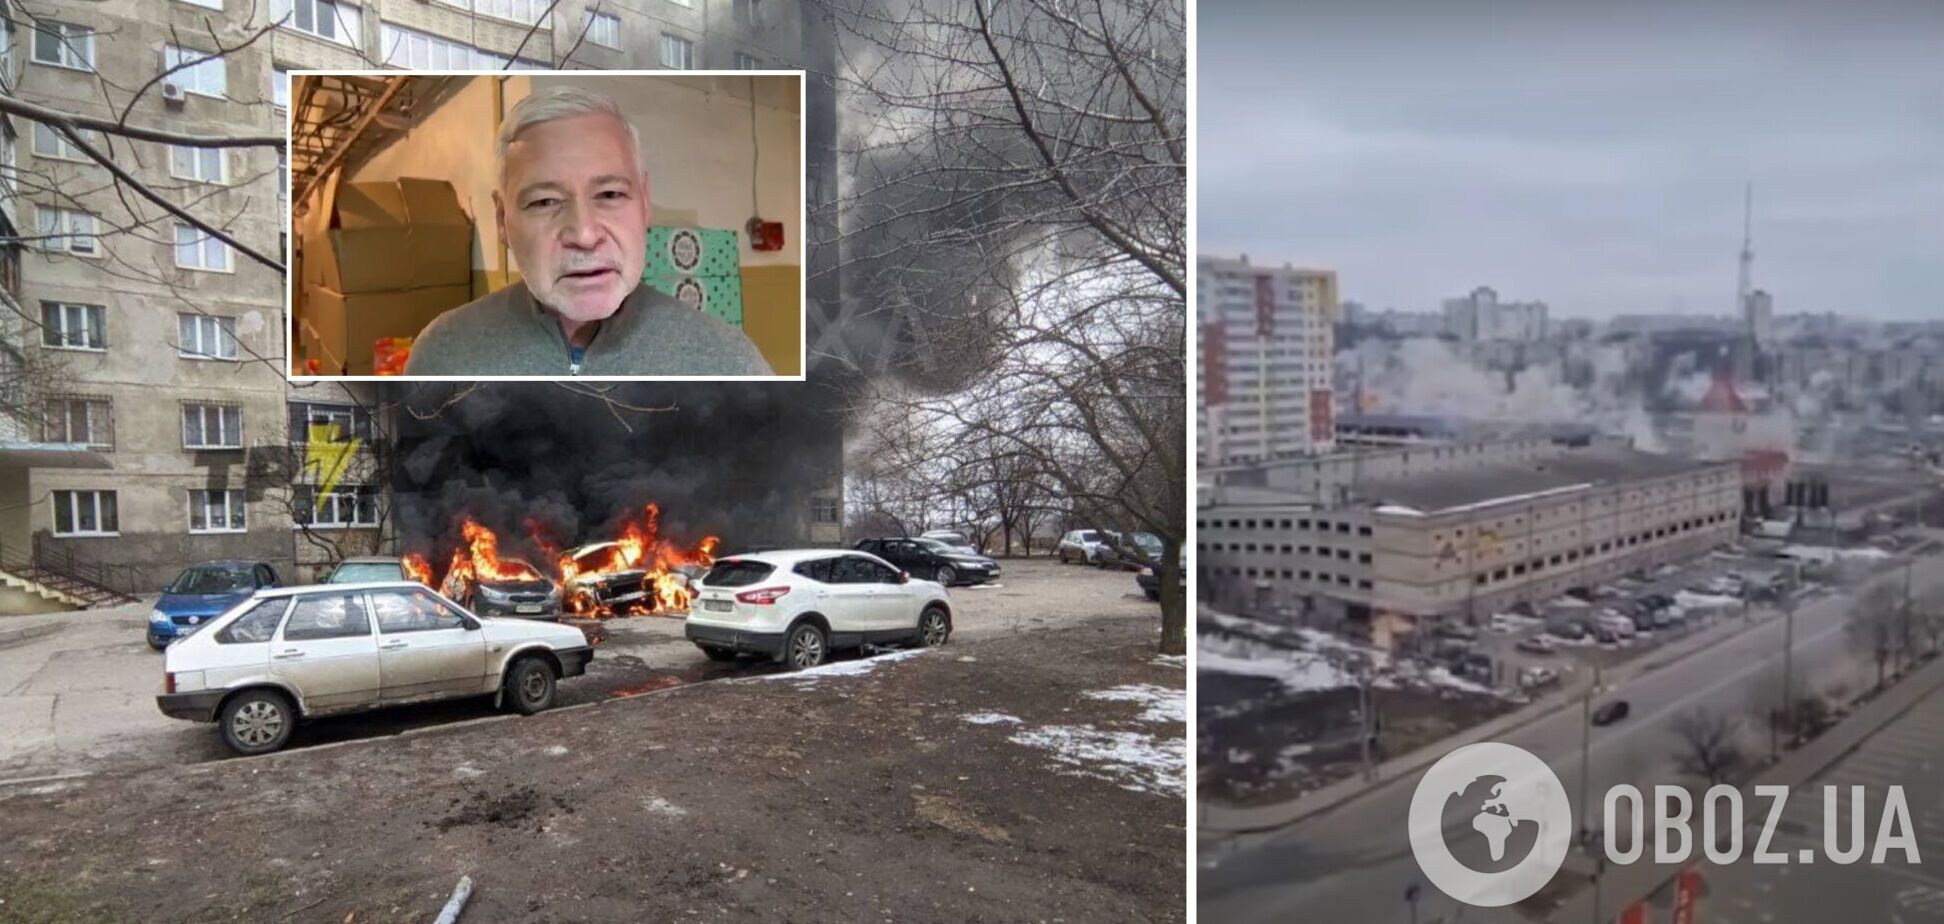 Мэр Харькова об обстреле города оккупантами: это не просто война, это убийство украинского народа. Видео